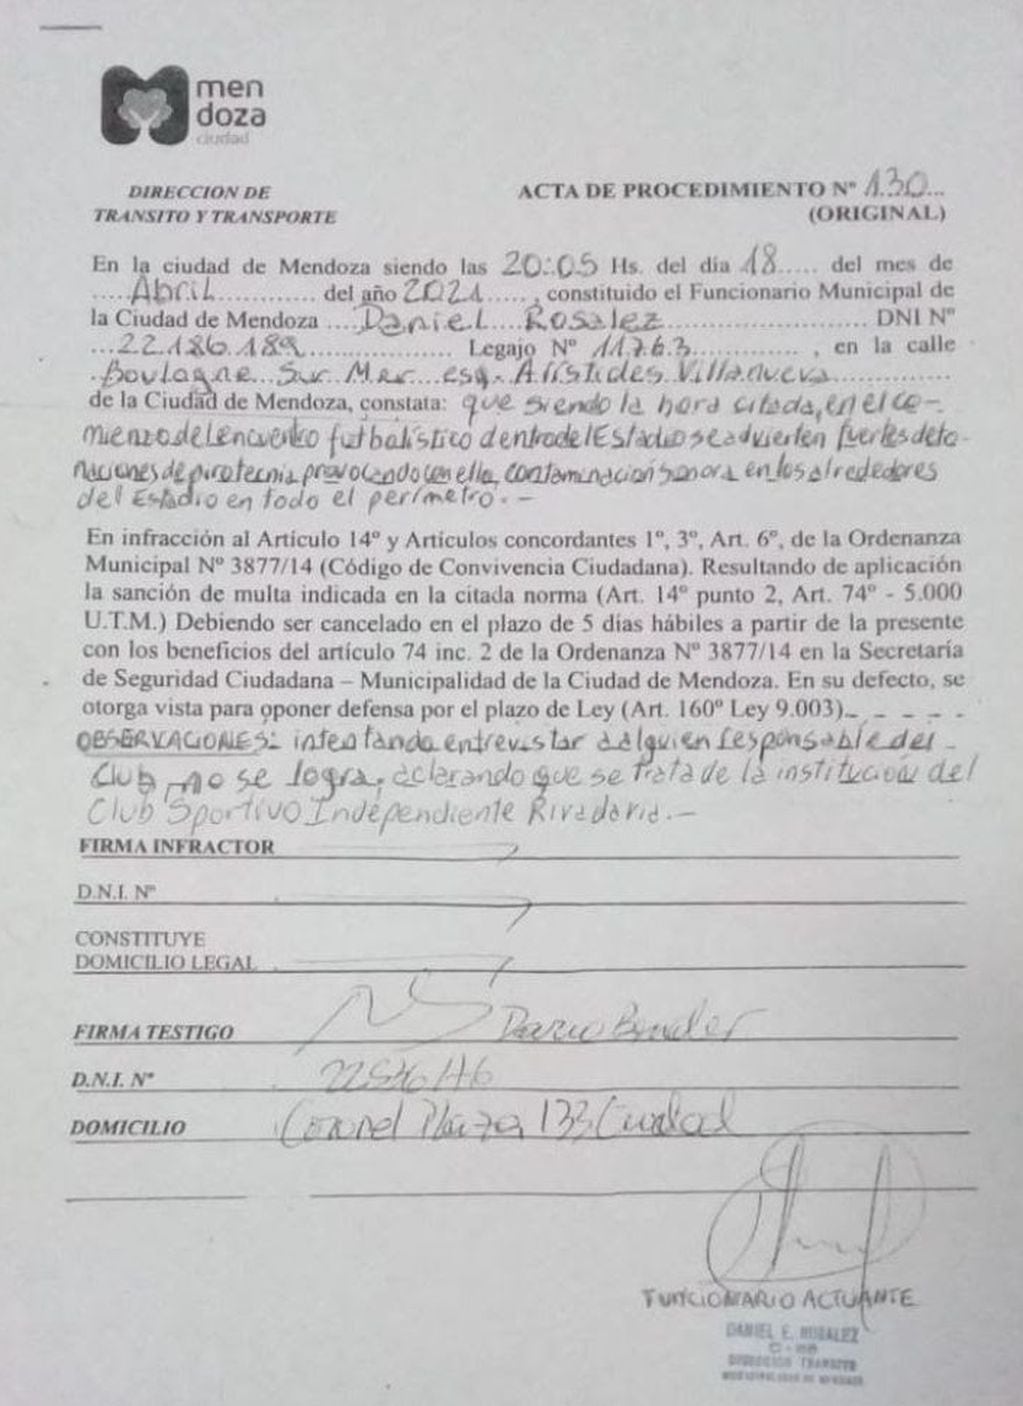 La Municipalidad de Mendoza sancionó al club Independiente Rivadavia por el uso de pirotecnia.